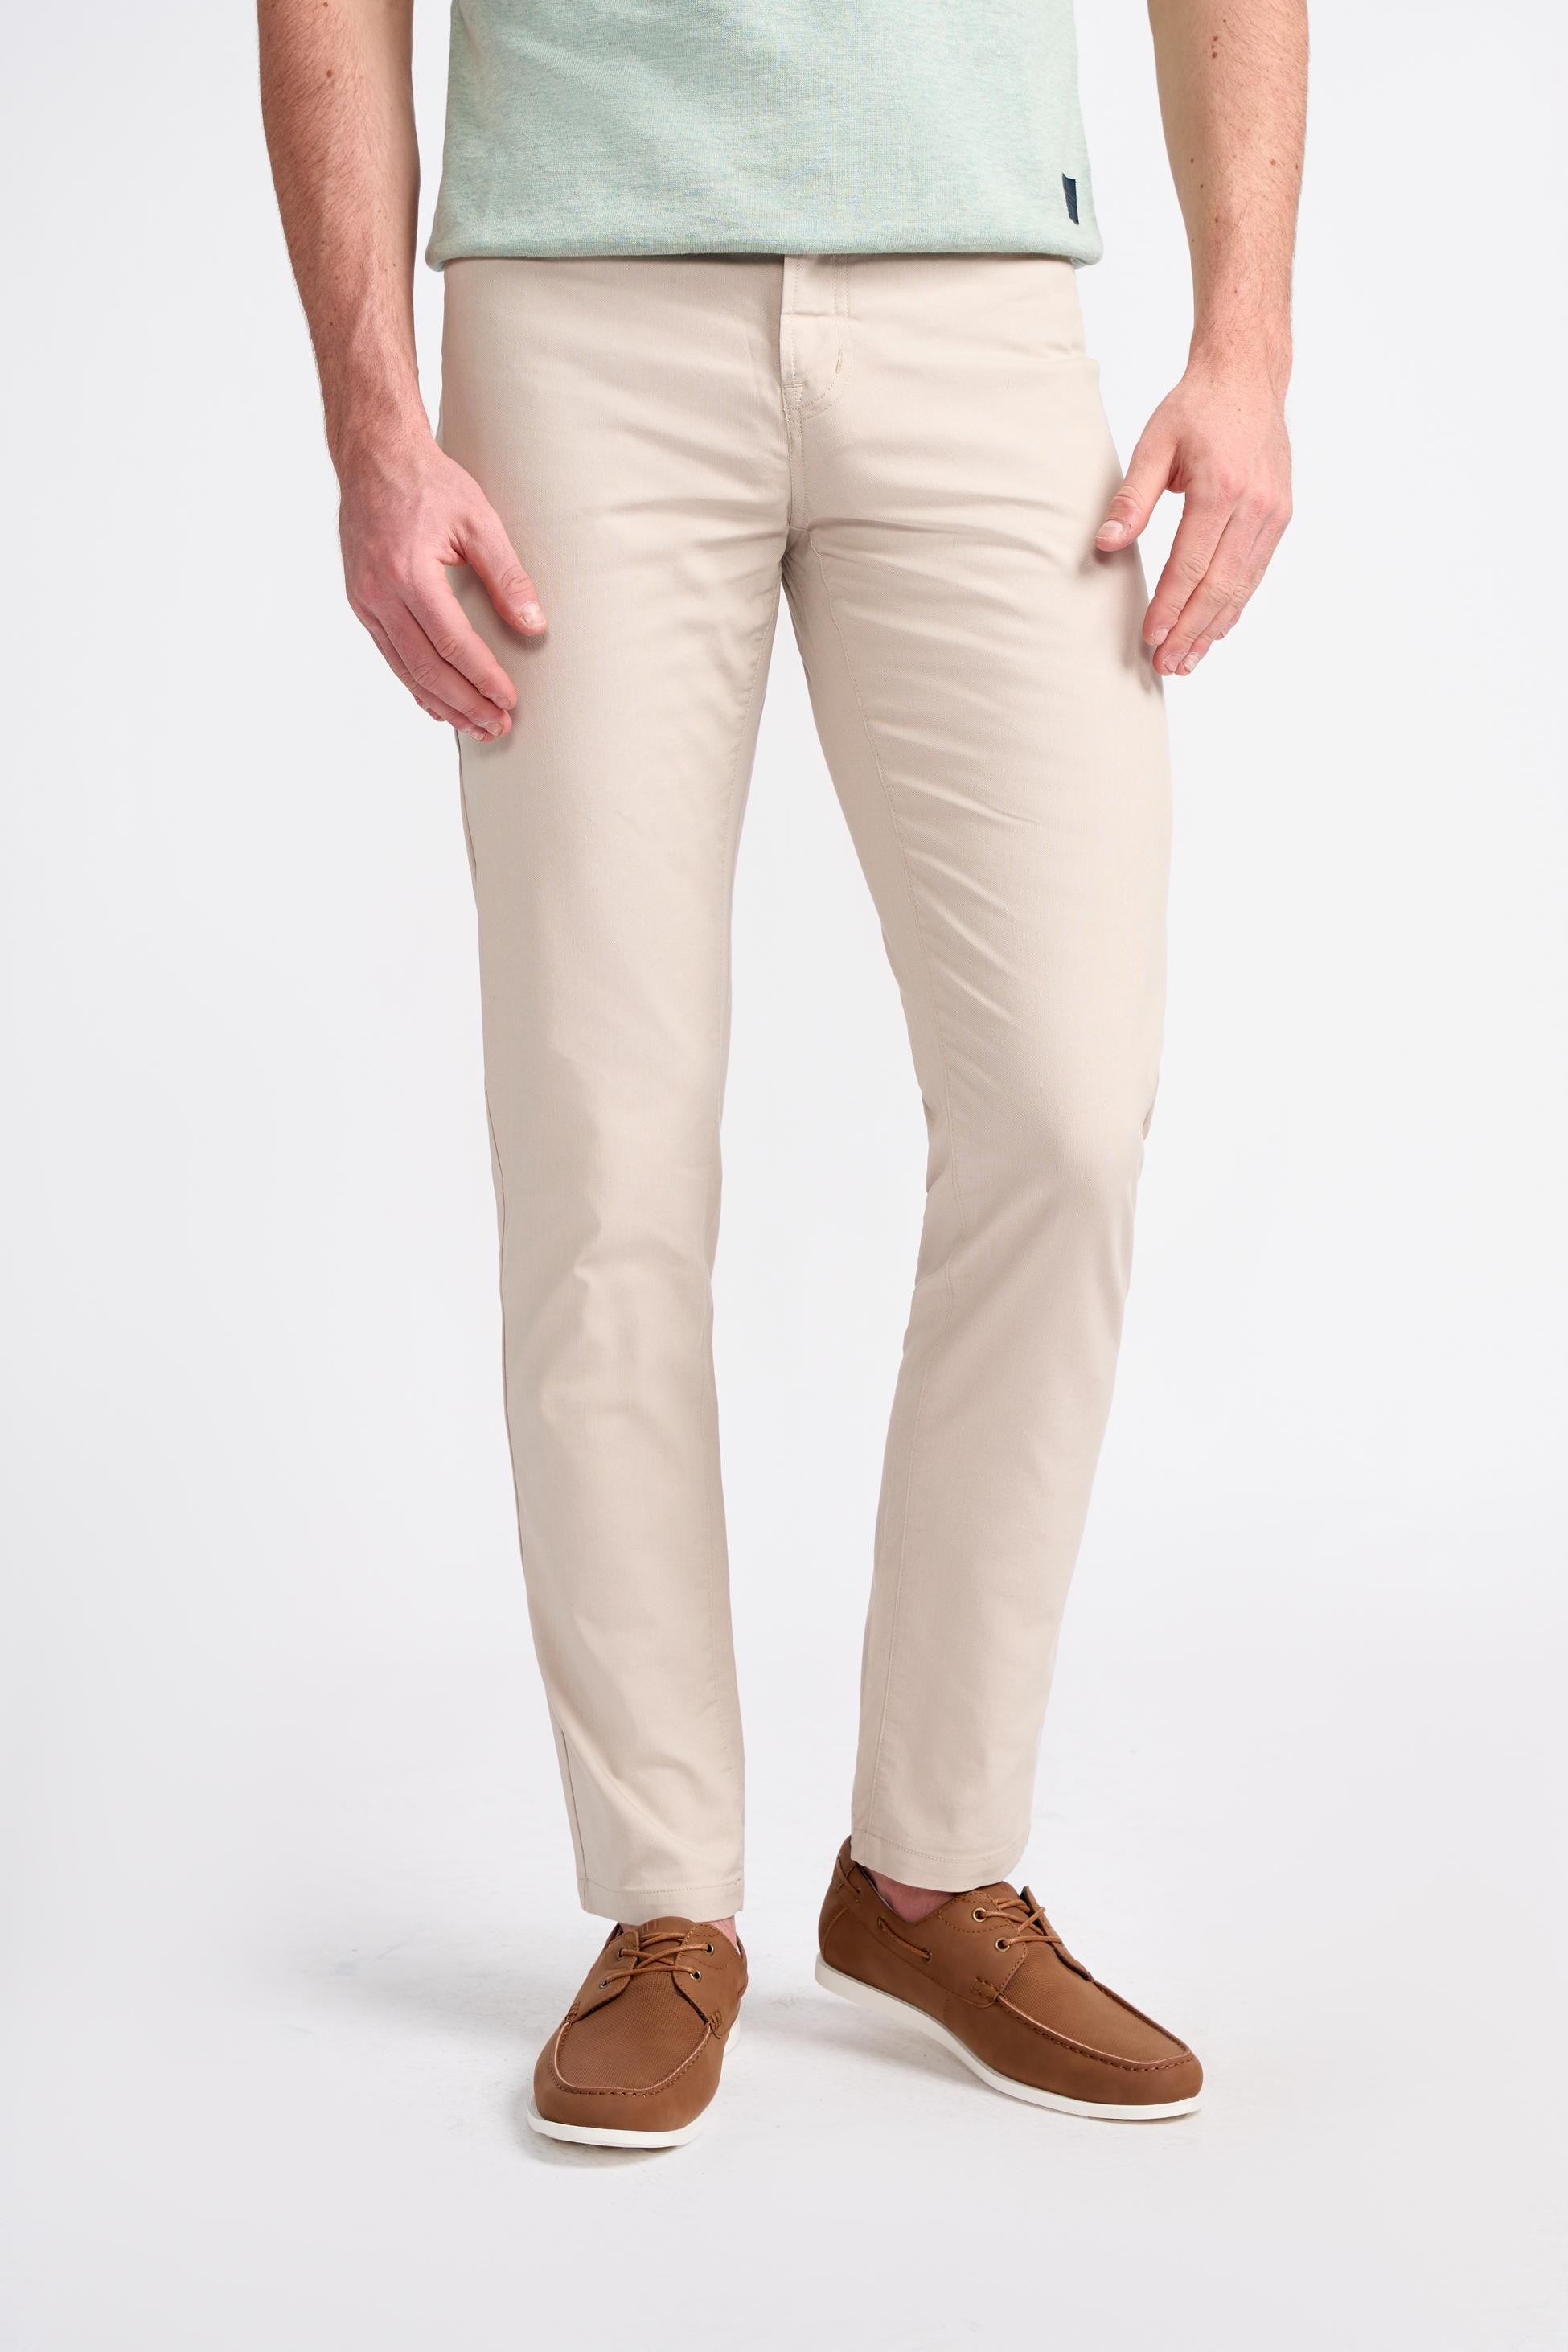 Pantalons Chino Coupe Jean en Mélange de Coton pour Hommes – DALTON - Faon